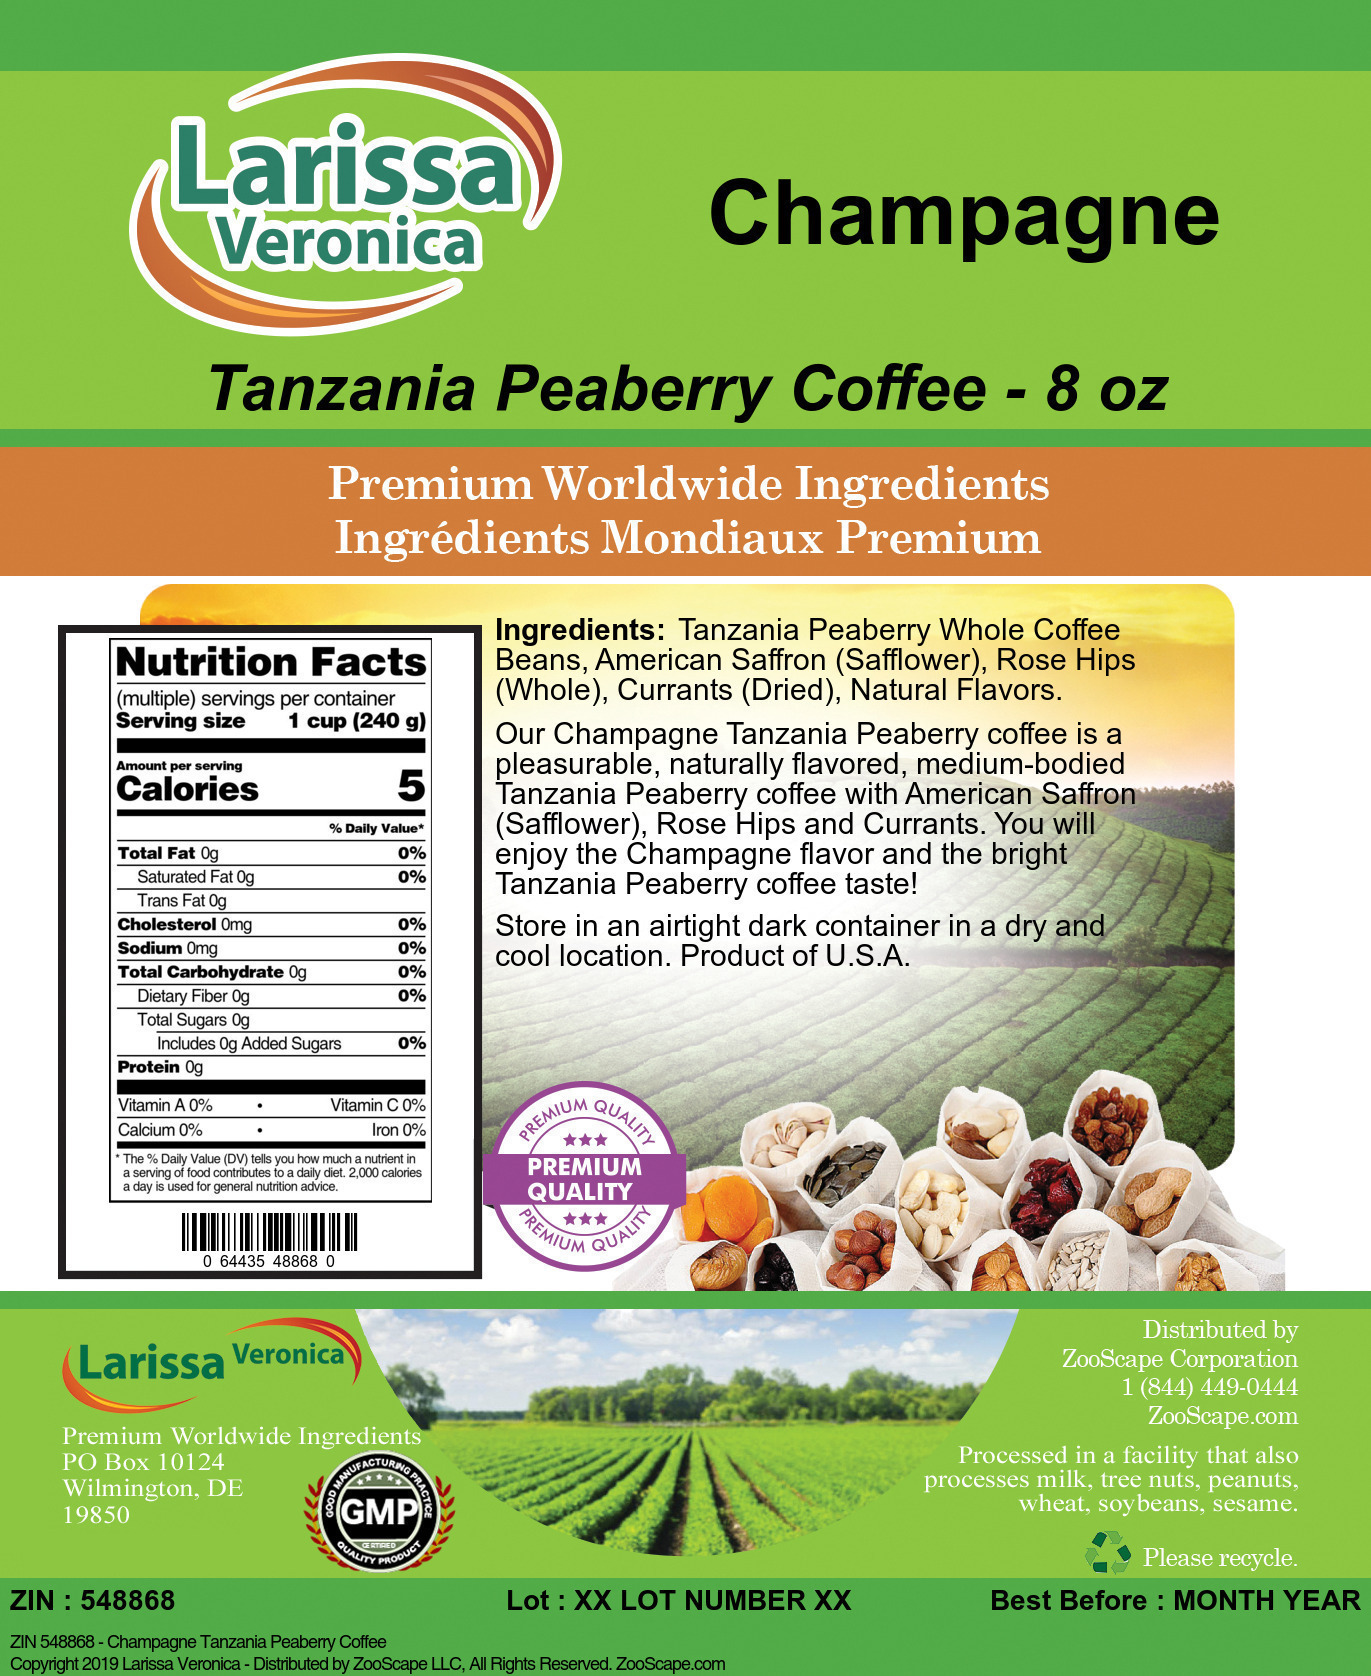 Champagne Tanzania Peaberry Coffee - Label